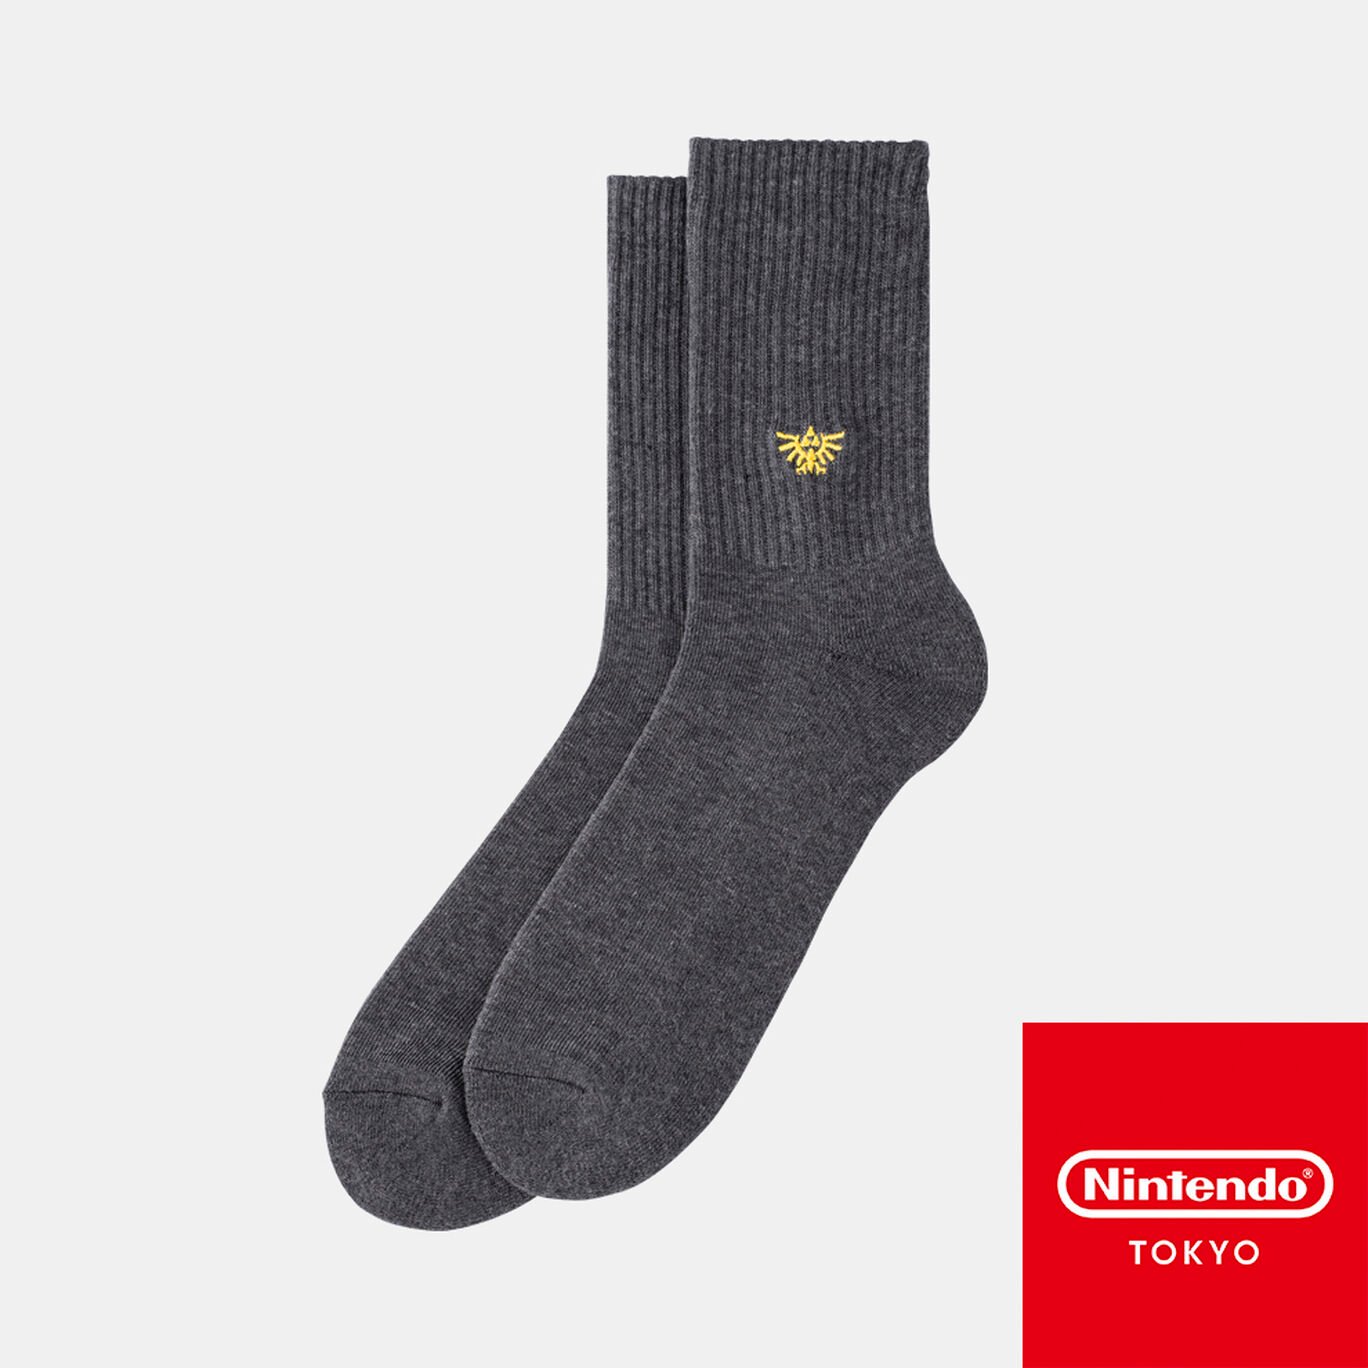 靴下 ハイラルの紋章 グレー ゼルダの伝説【Nintendo TOKYO/OSAKA取り扱い商品】